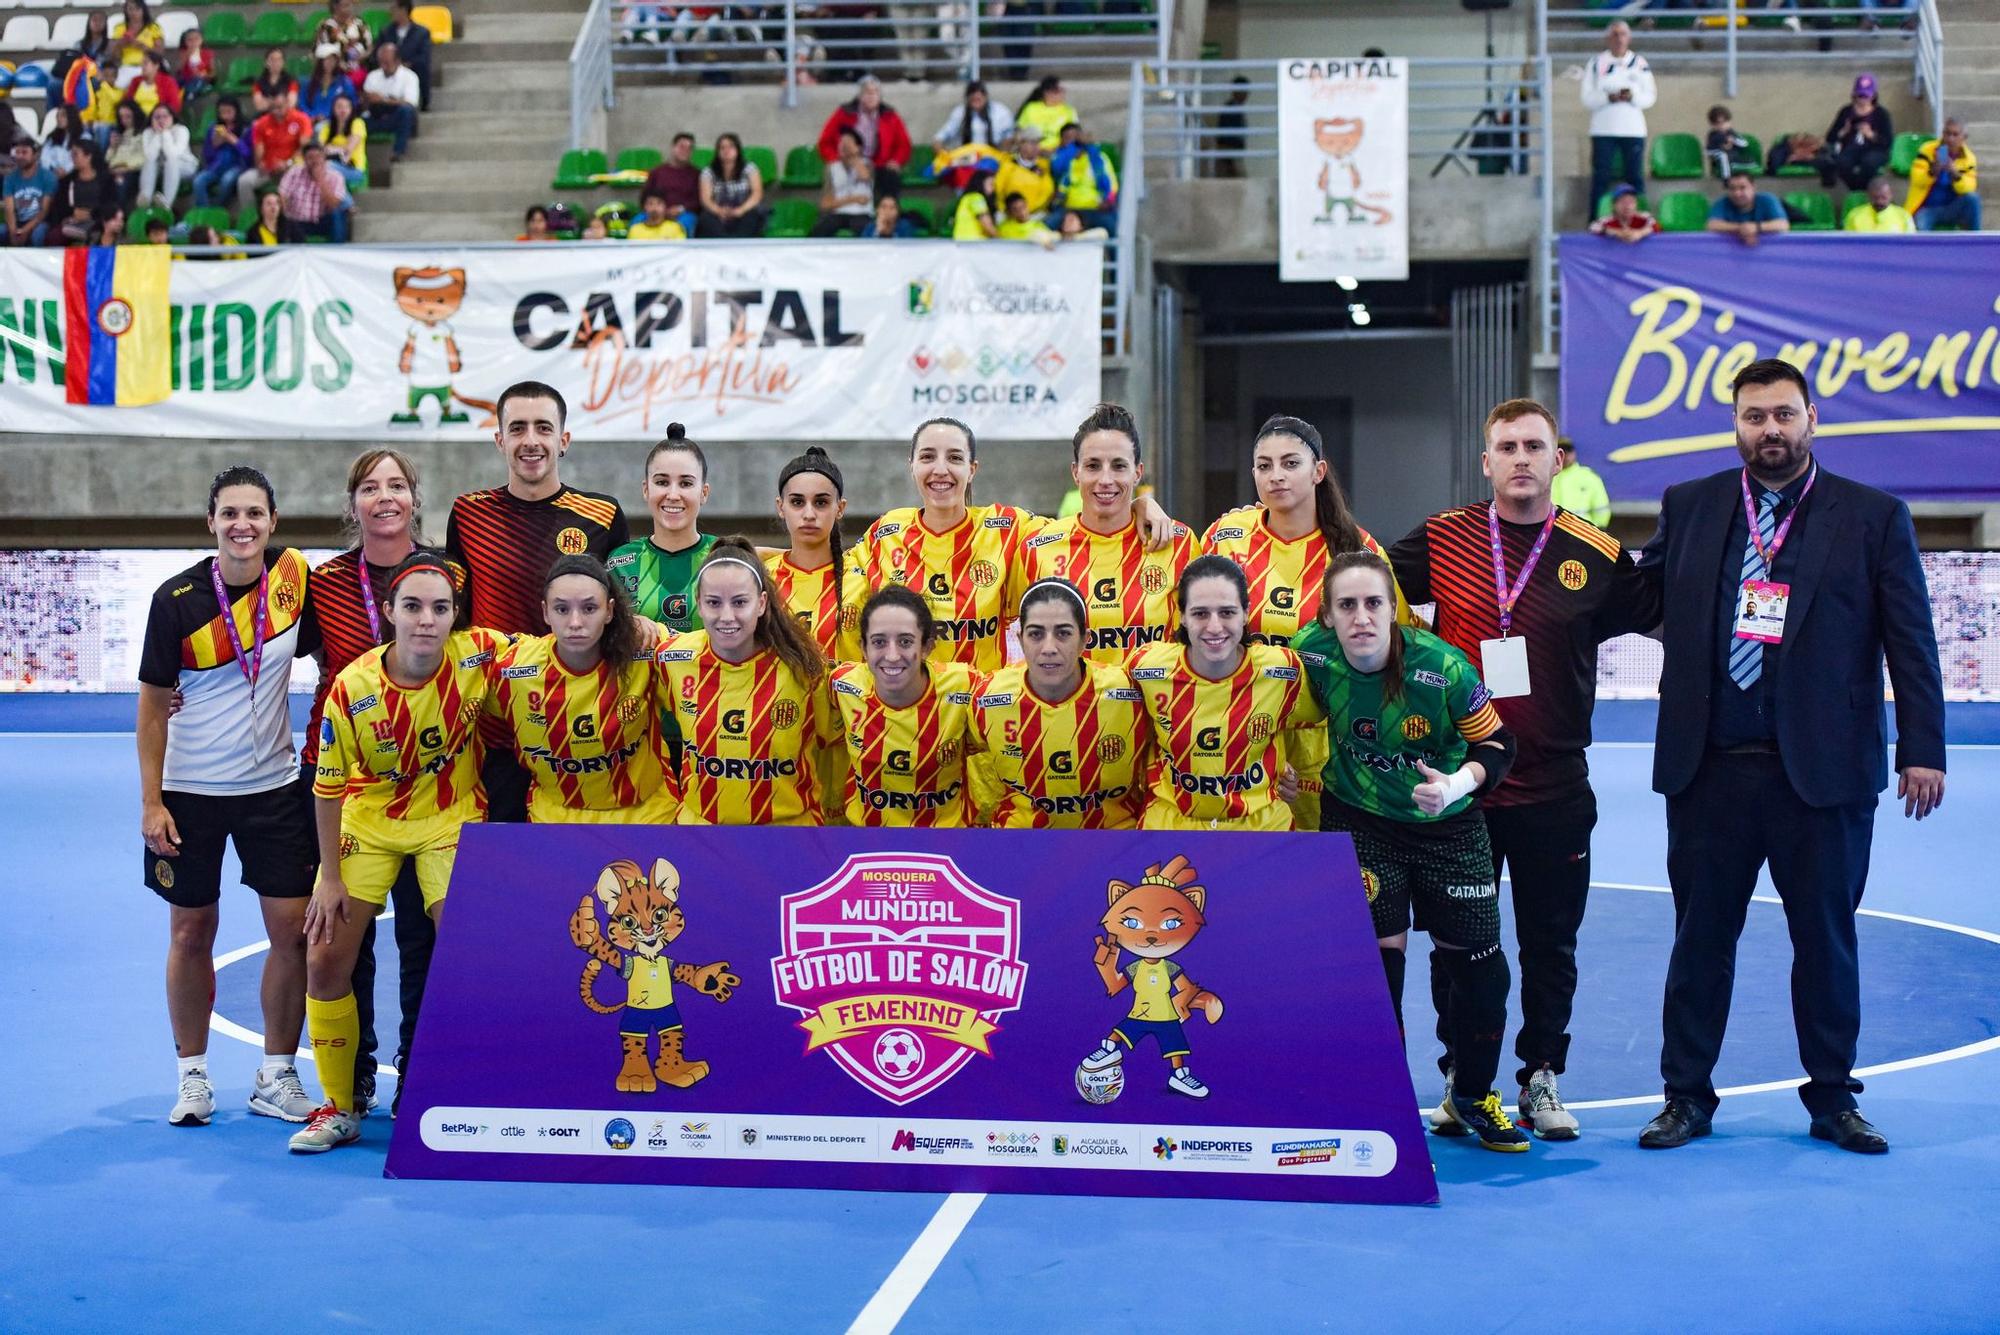 La selecció catalana femenina jugarà dos amistosos a França els dies 27 i 28 de maig